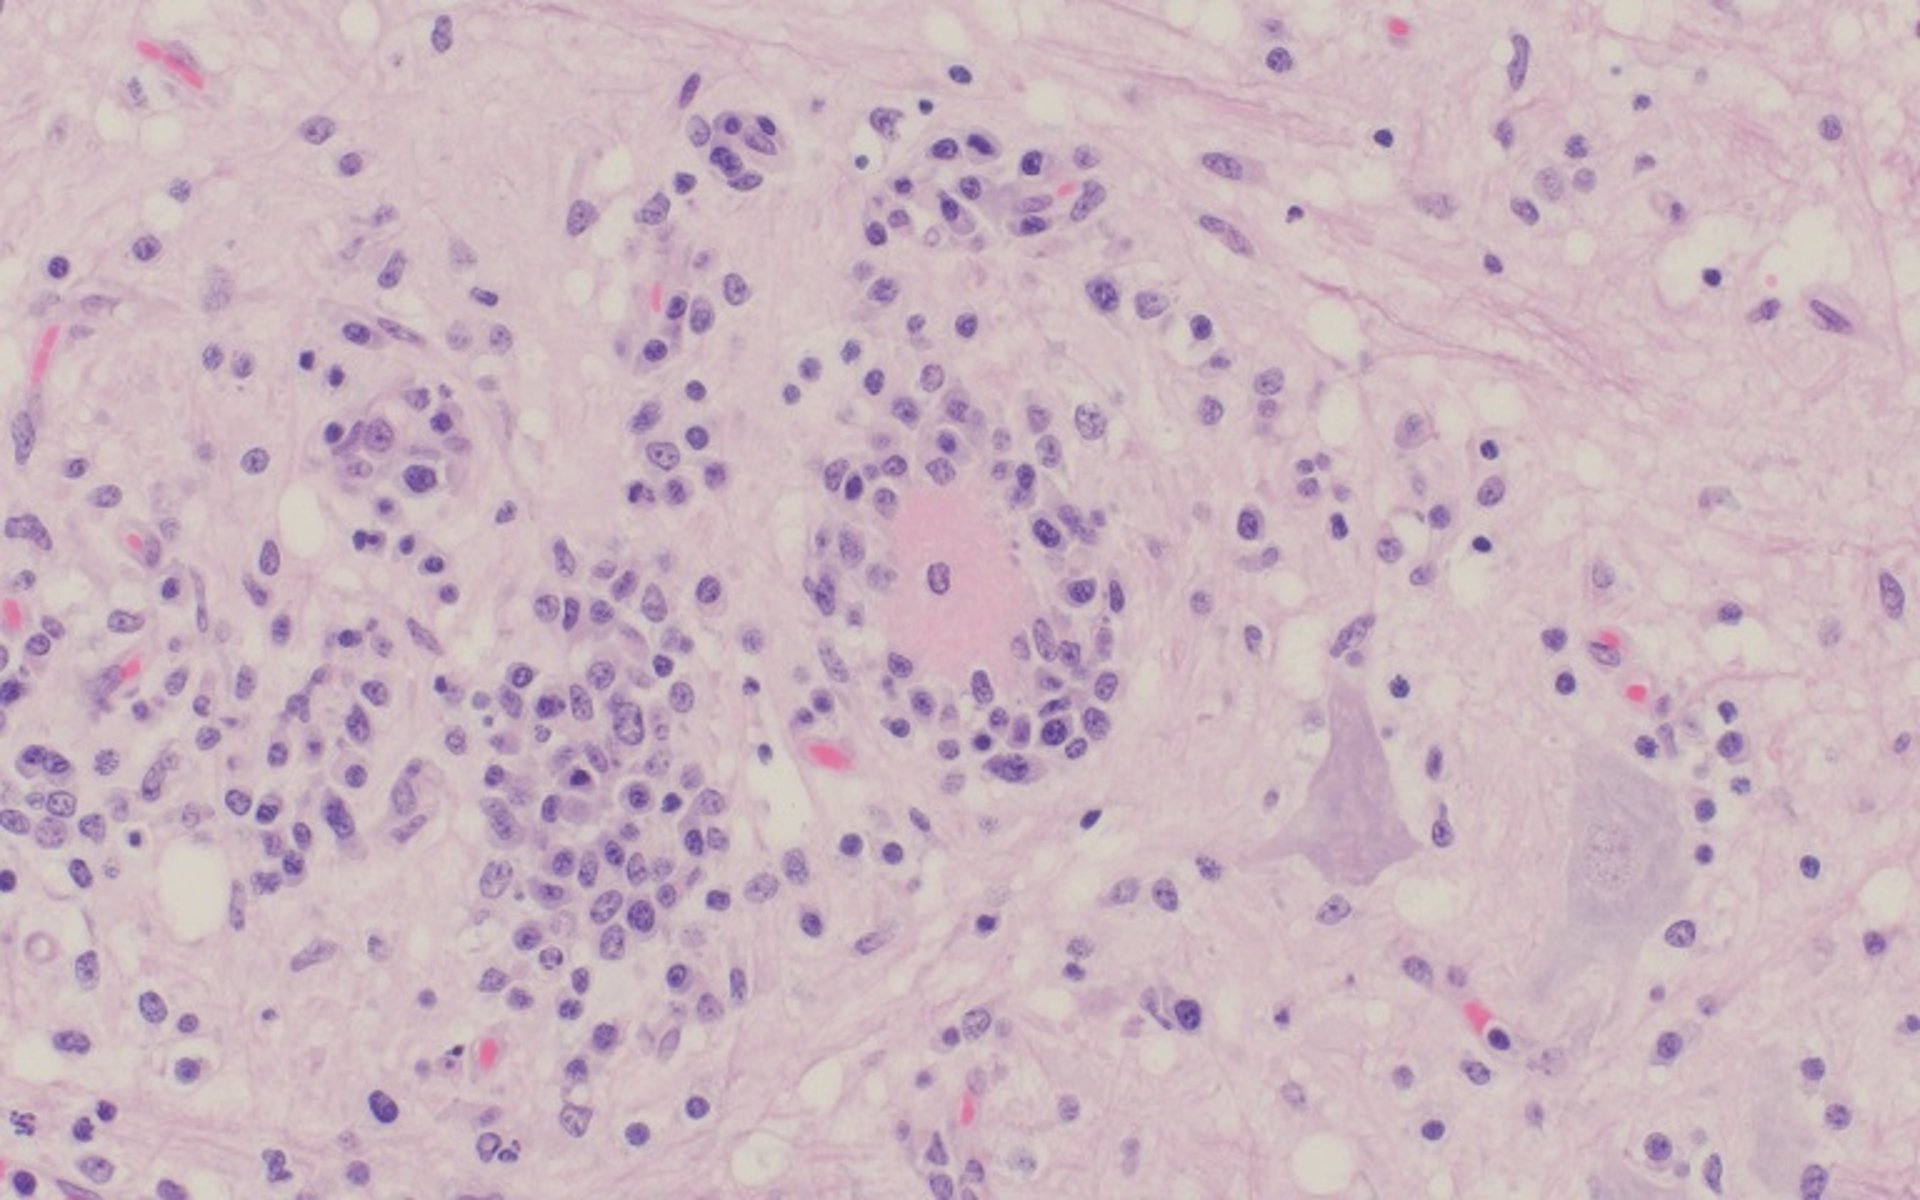 Teschovirus encephalomyelitis, neuronal necrosis and satellitosis